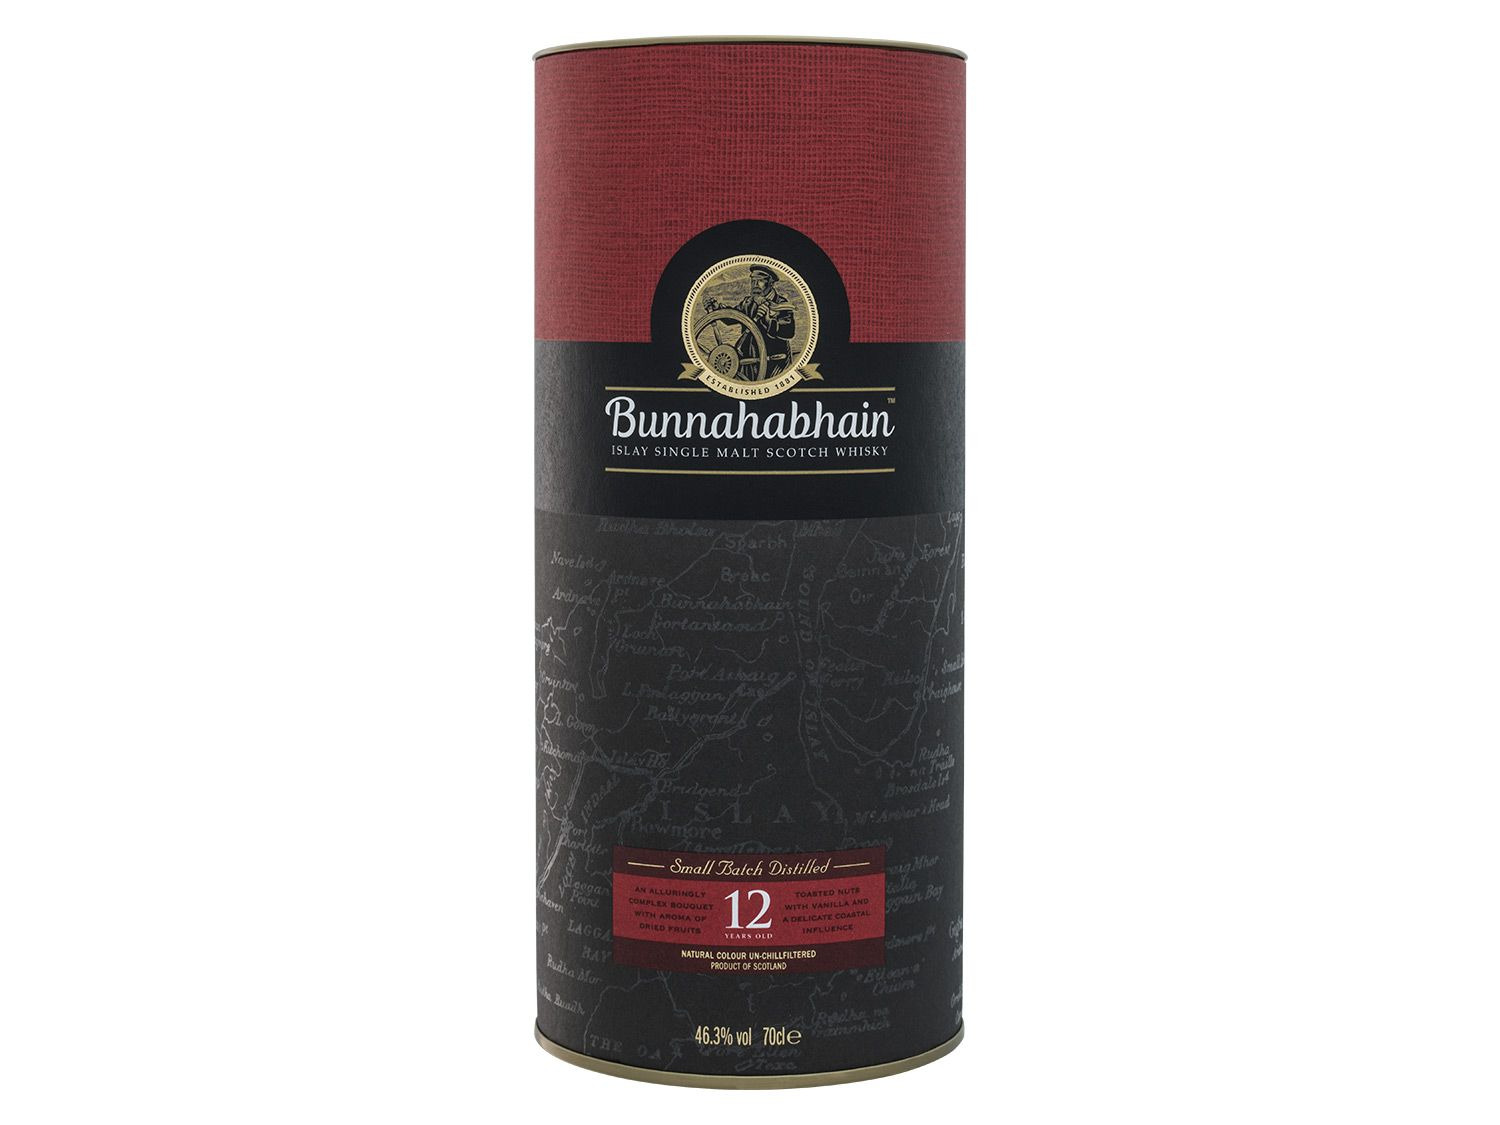 Bunnahabhain Islay Single Malt Scotch Whisky 12 Jahre …